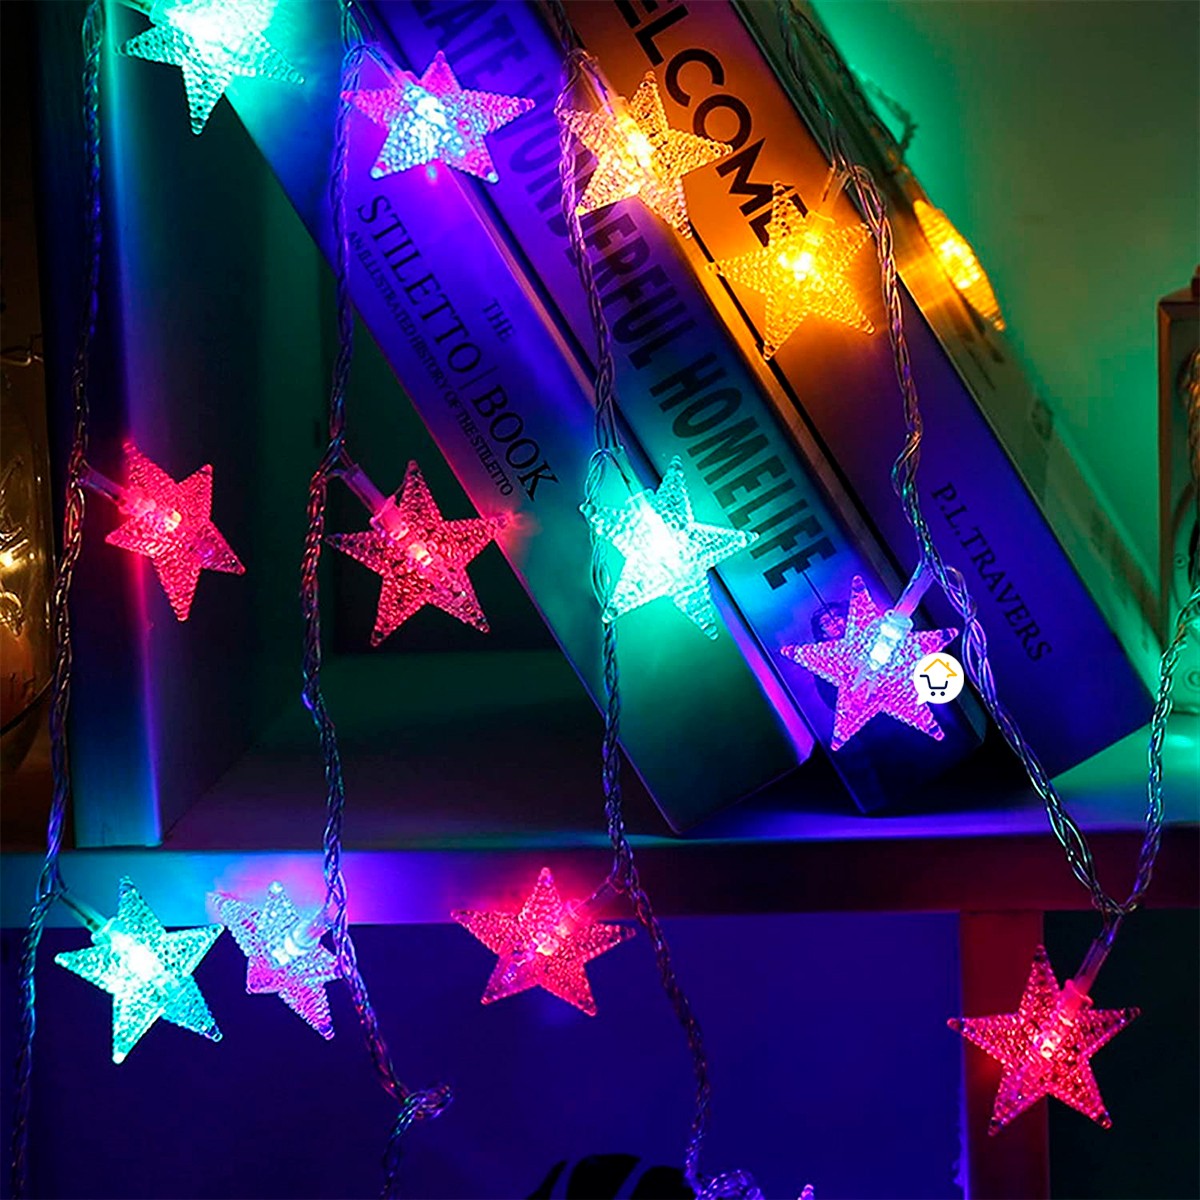 Luces Led Estrella X272 LED Cortina Luces 6m Navidad Azul